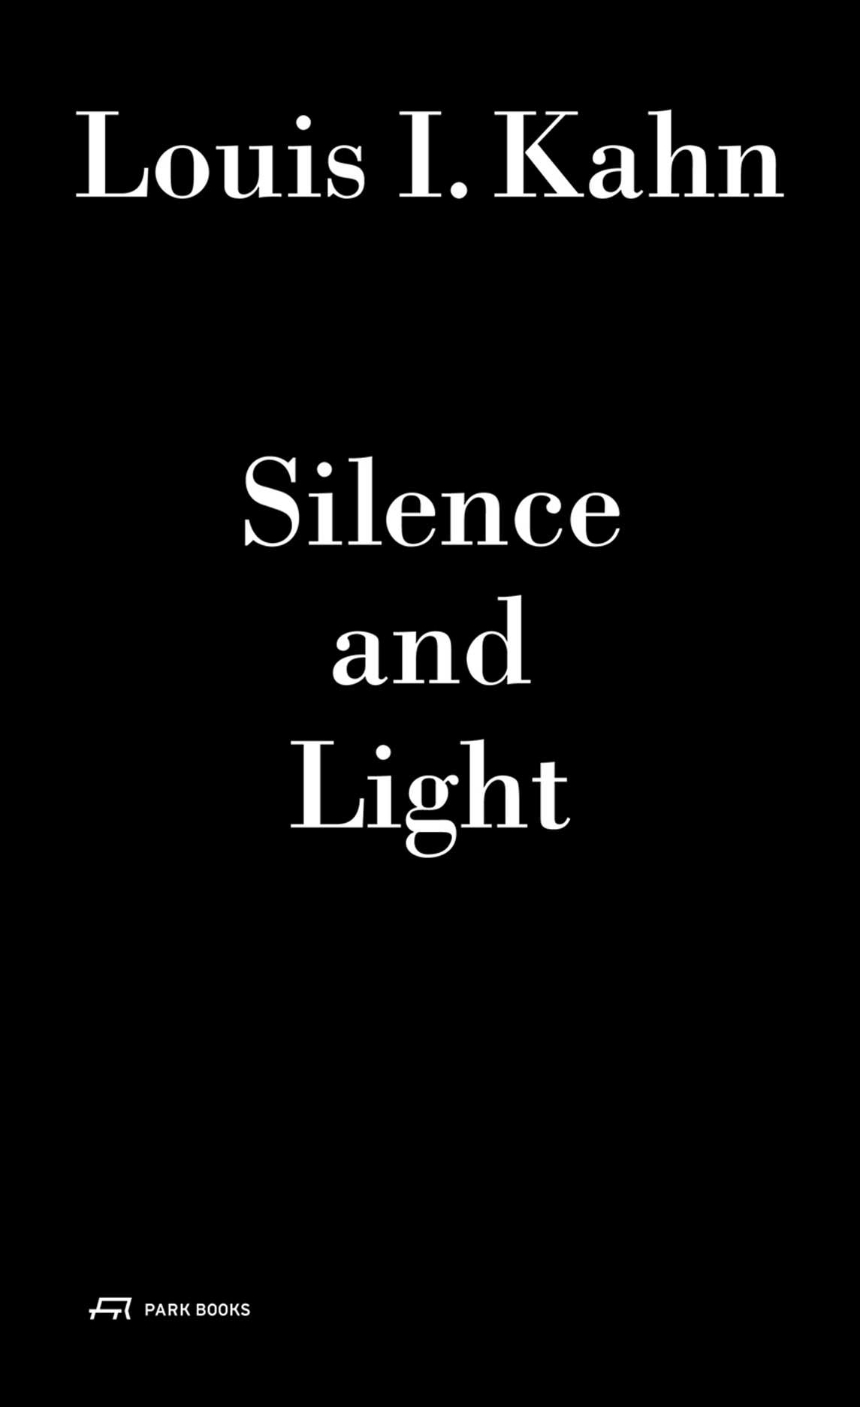 Louis I. Kahn - Silence and Light